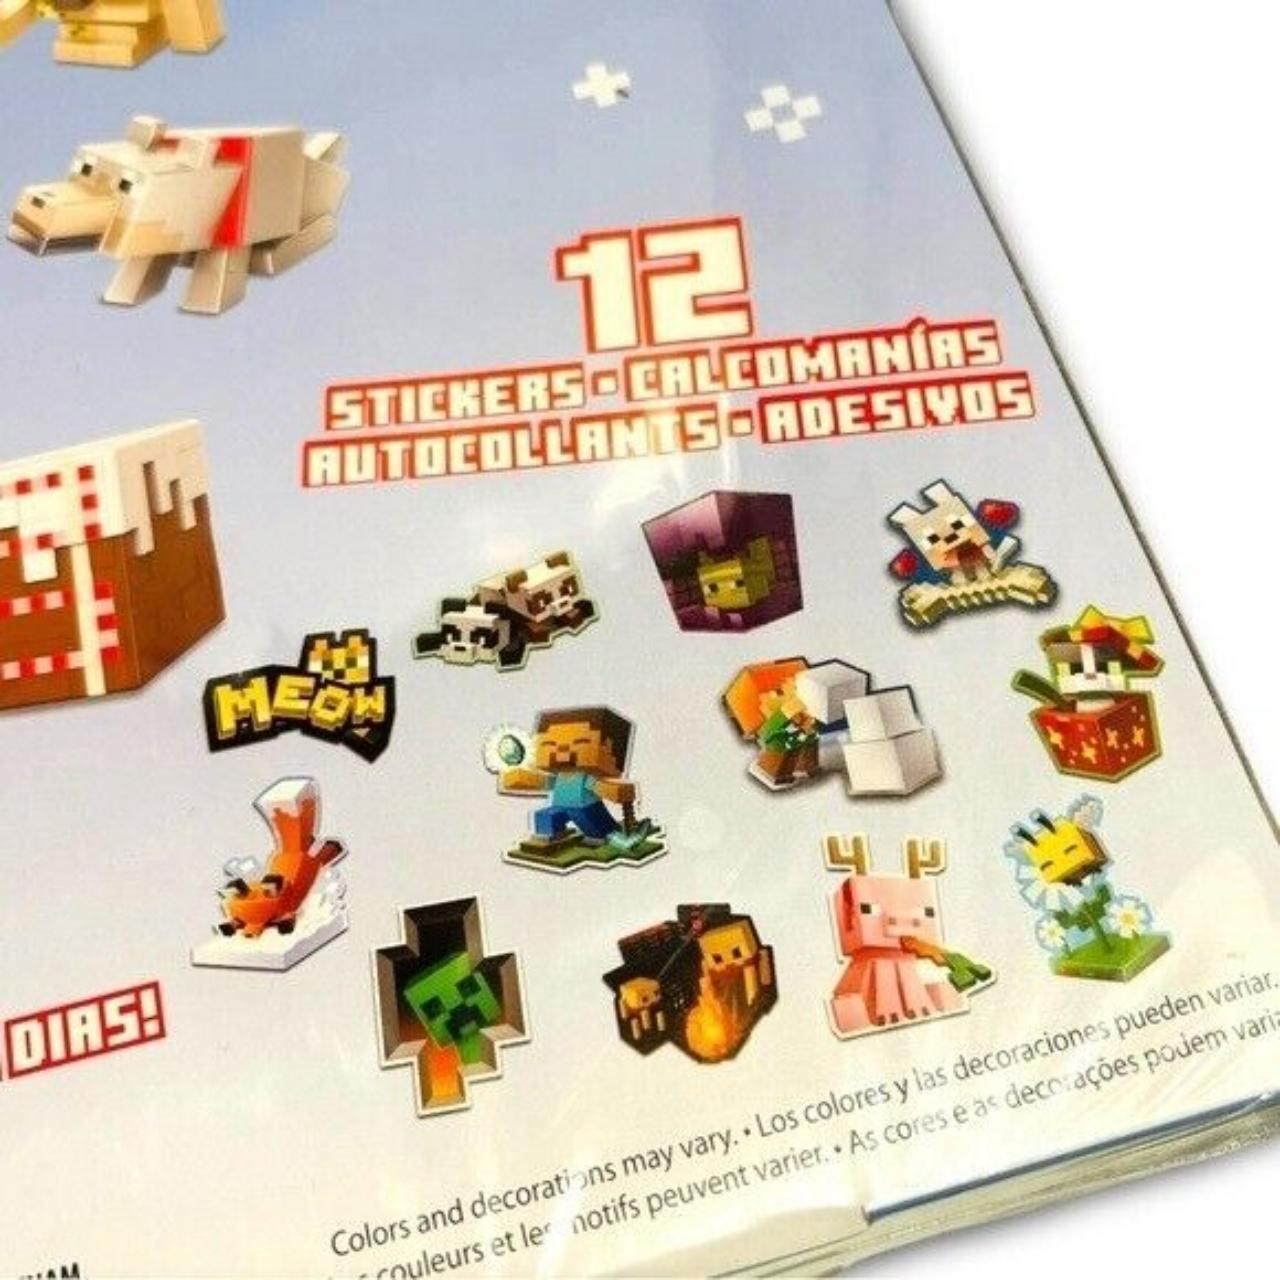 Mattel 2021 Minecraft Christmas Holiday Advent Calendar! New & Unopened!